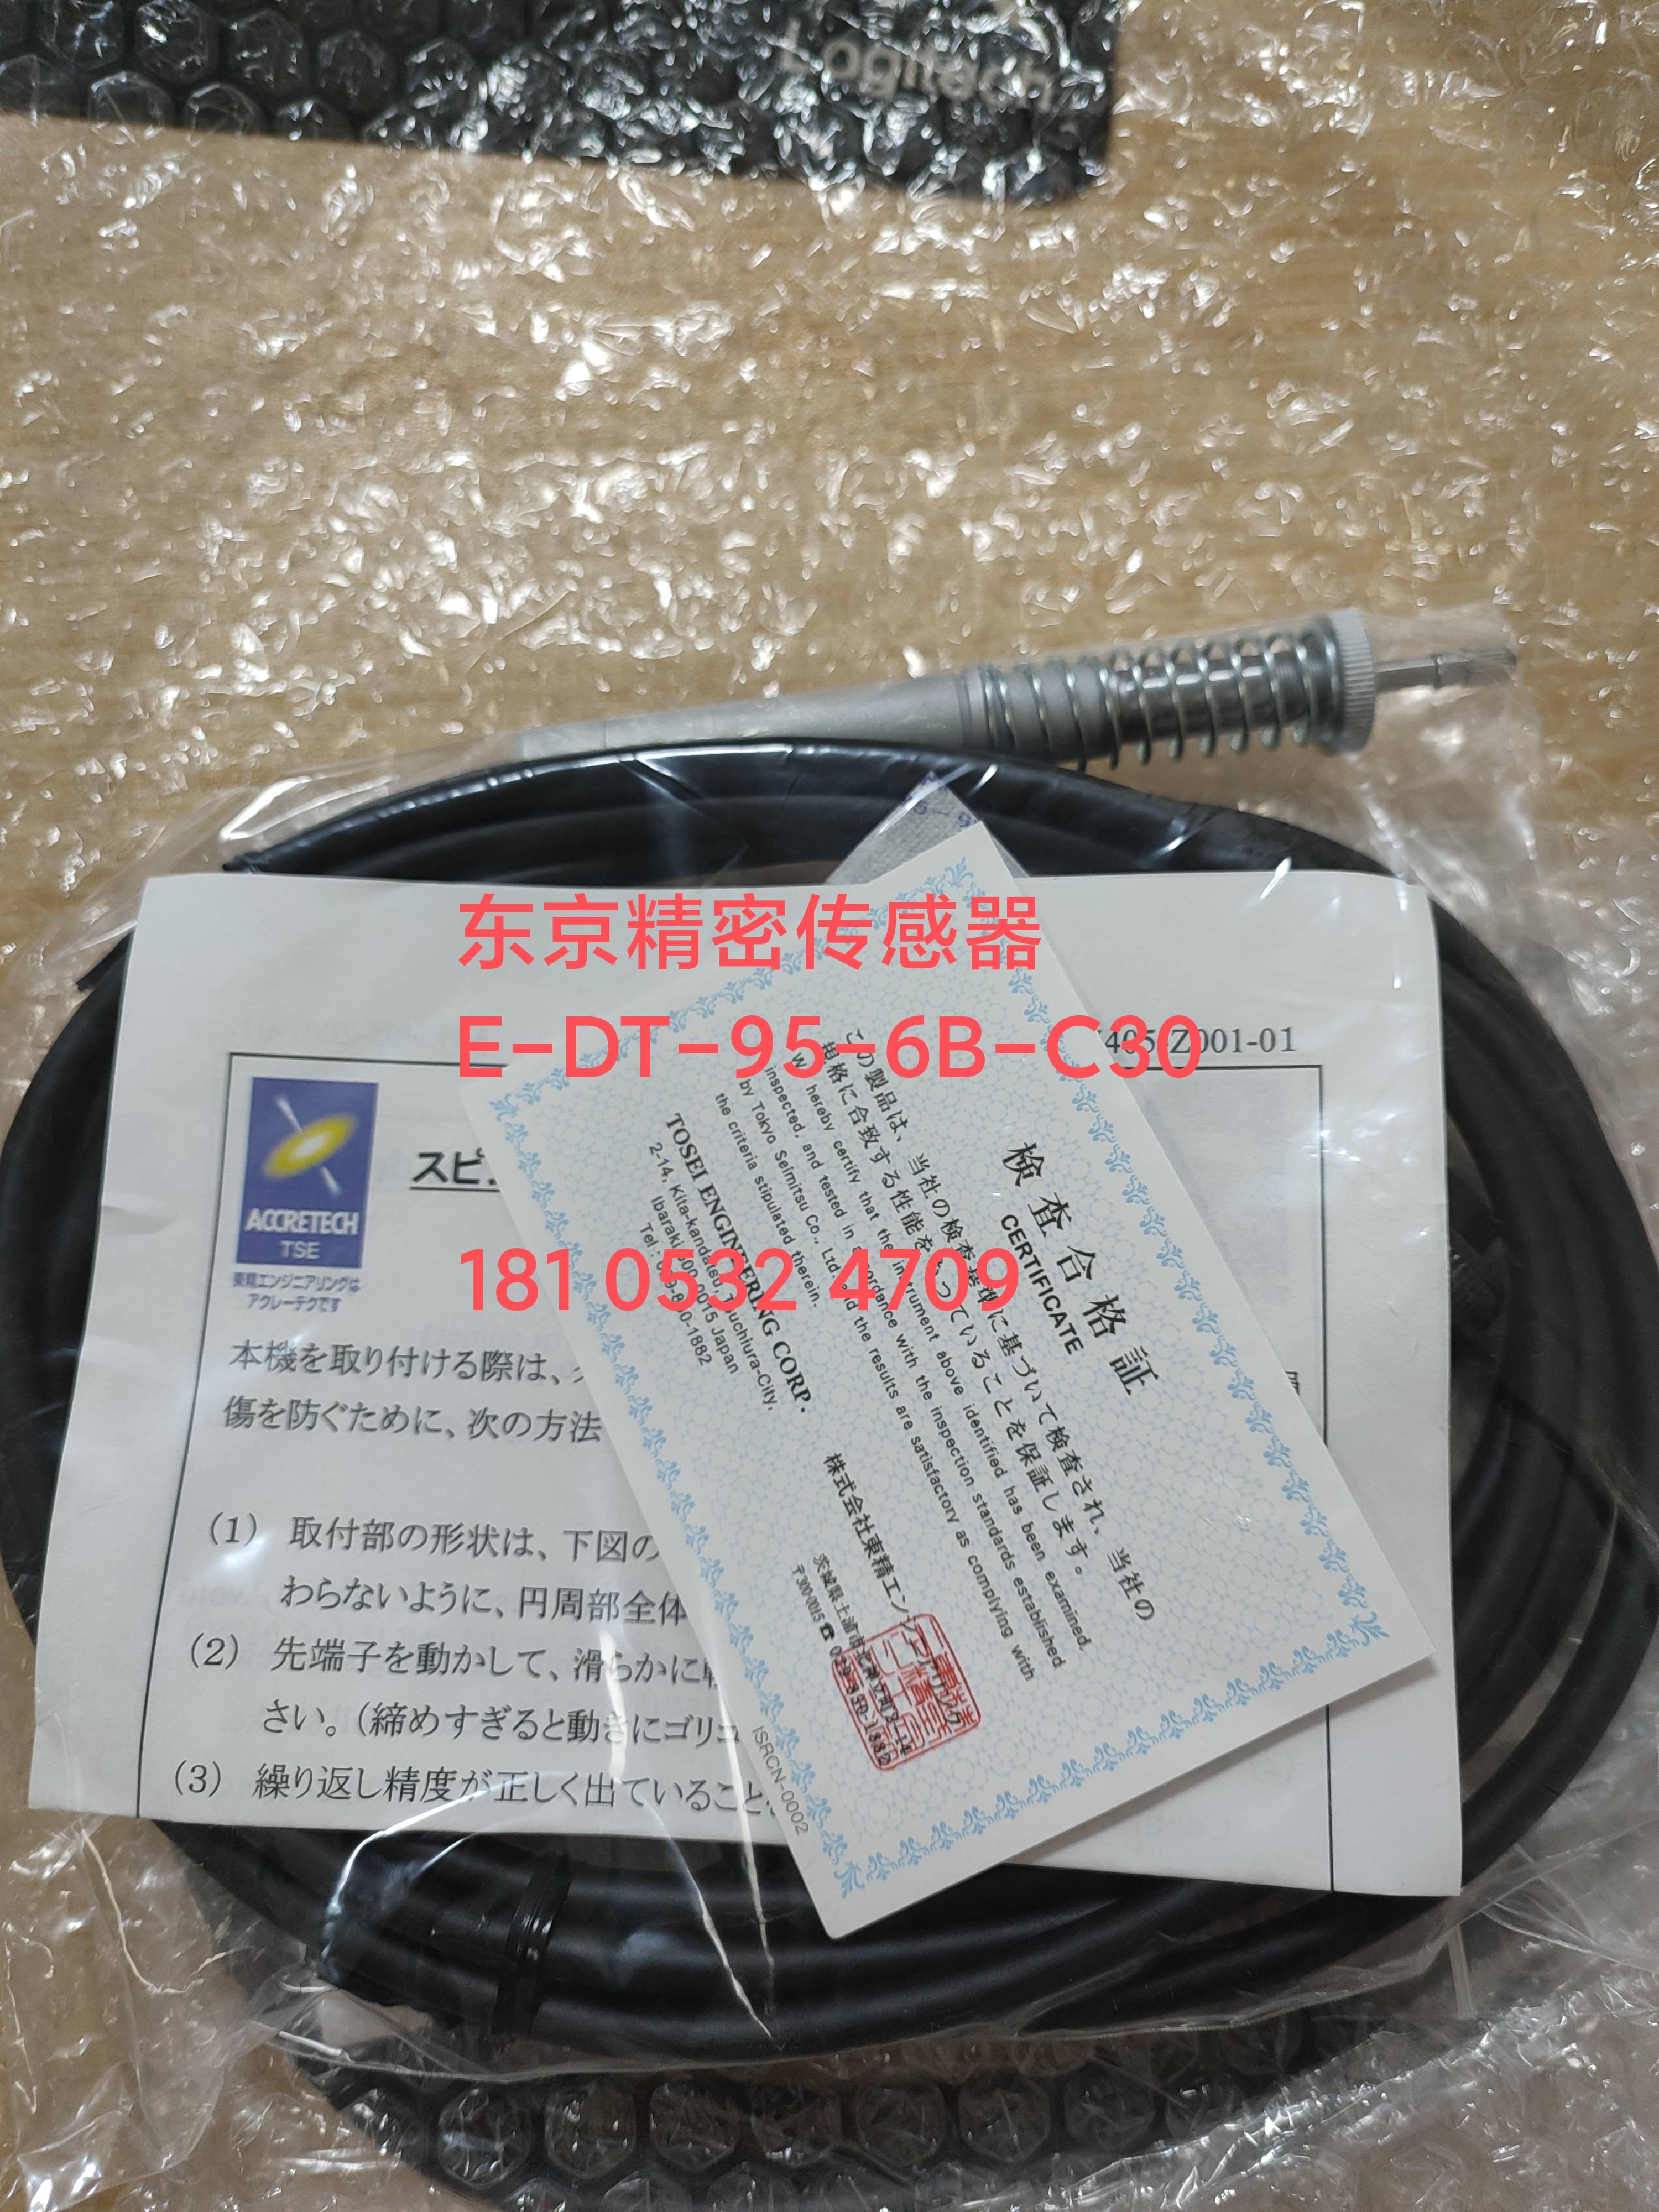 日本东京精密ACCRETECH 传感器E-DT-95-6B-C30+接头H46